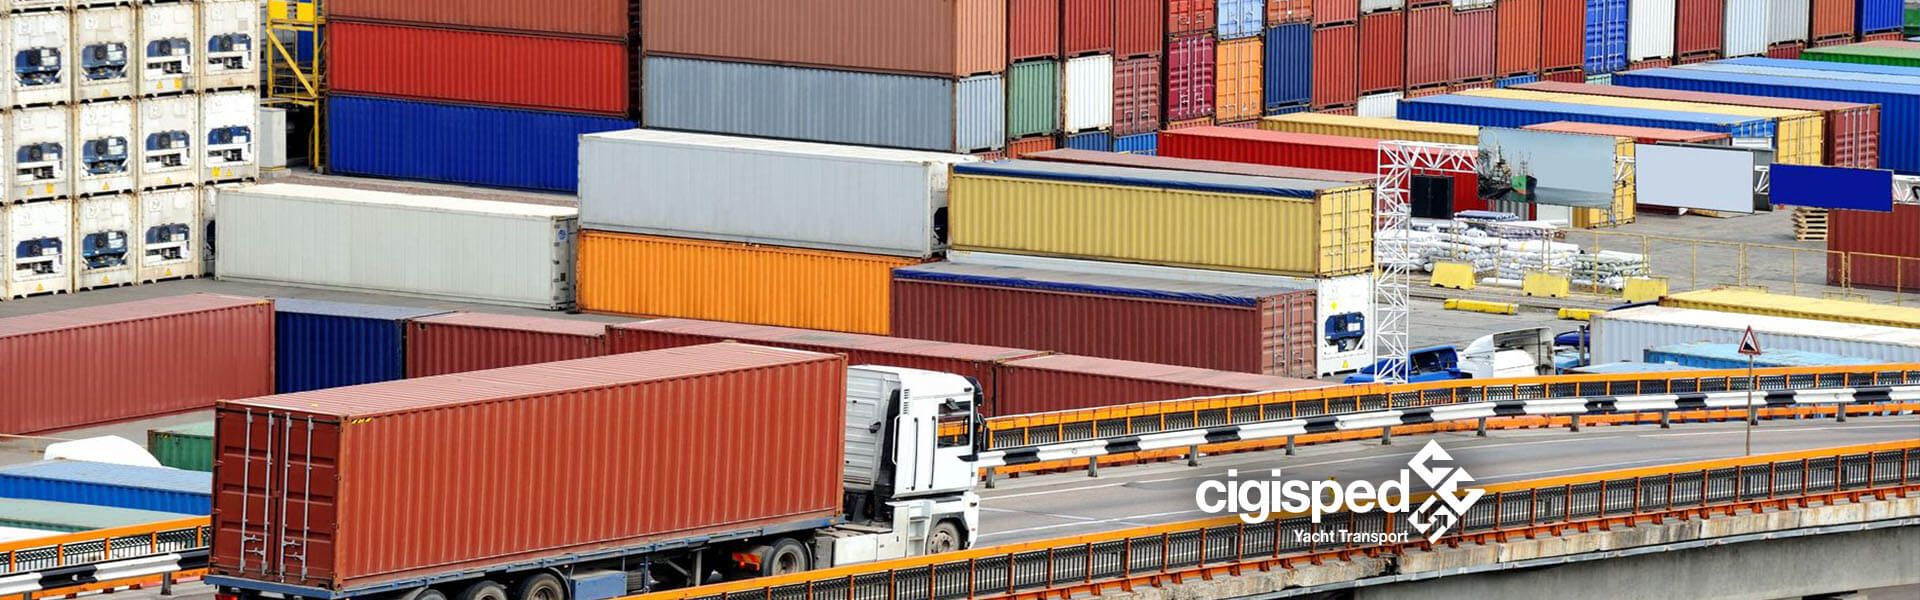 Cigisped trasporto logistica integrata container servizio stoccaggio assistenza